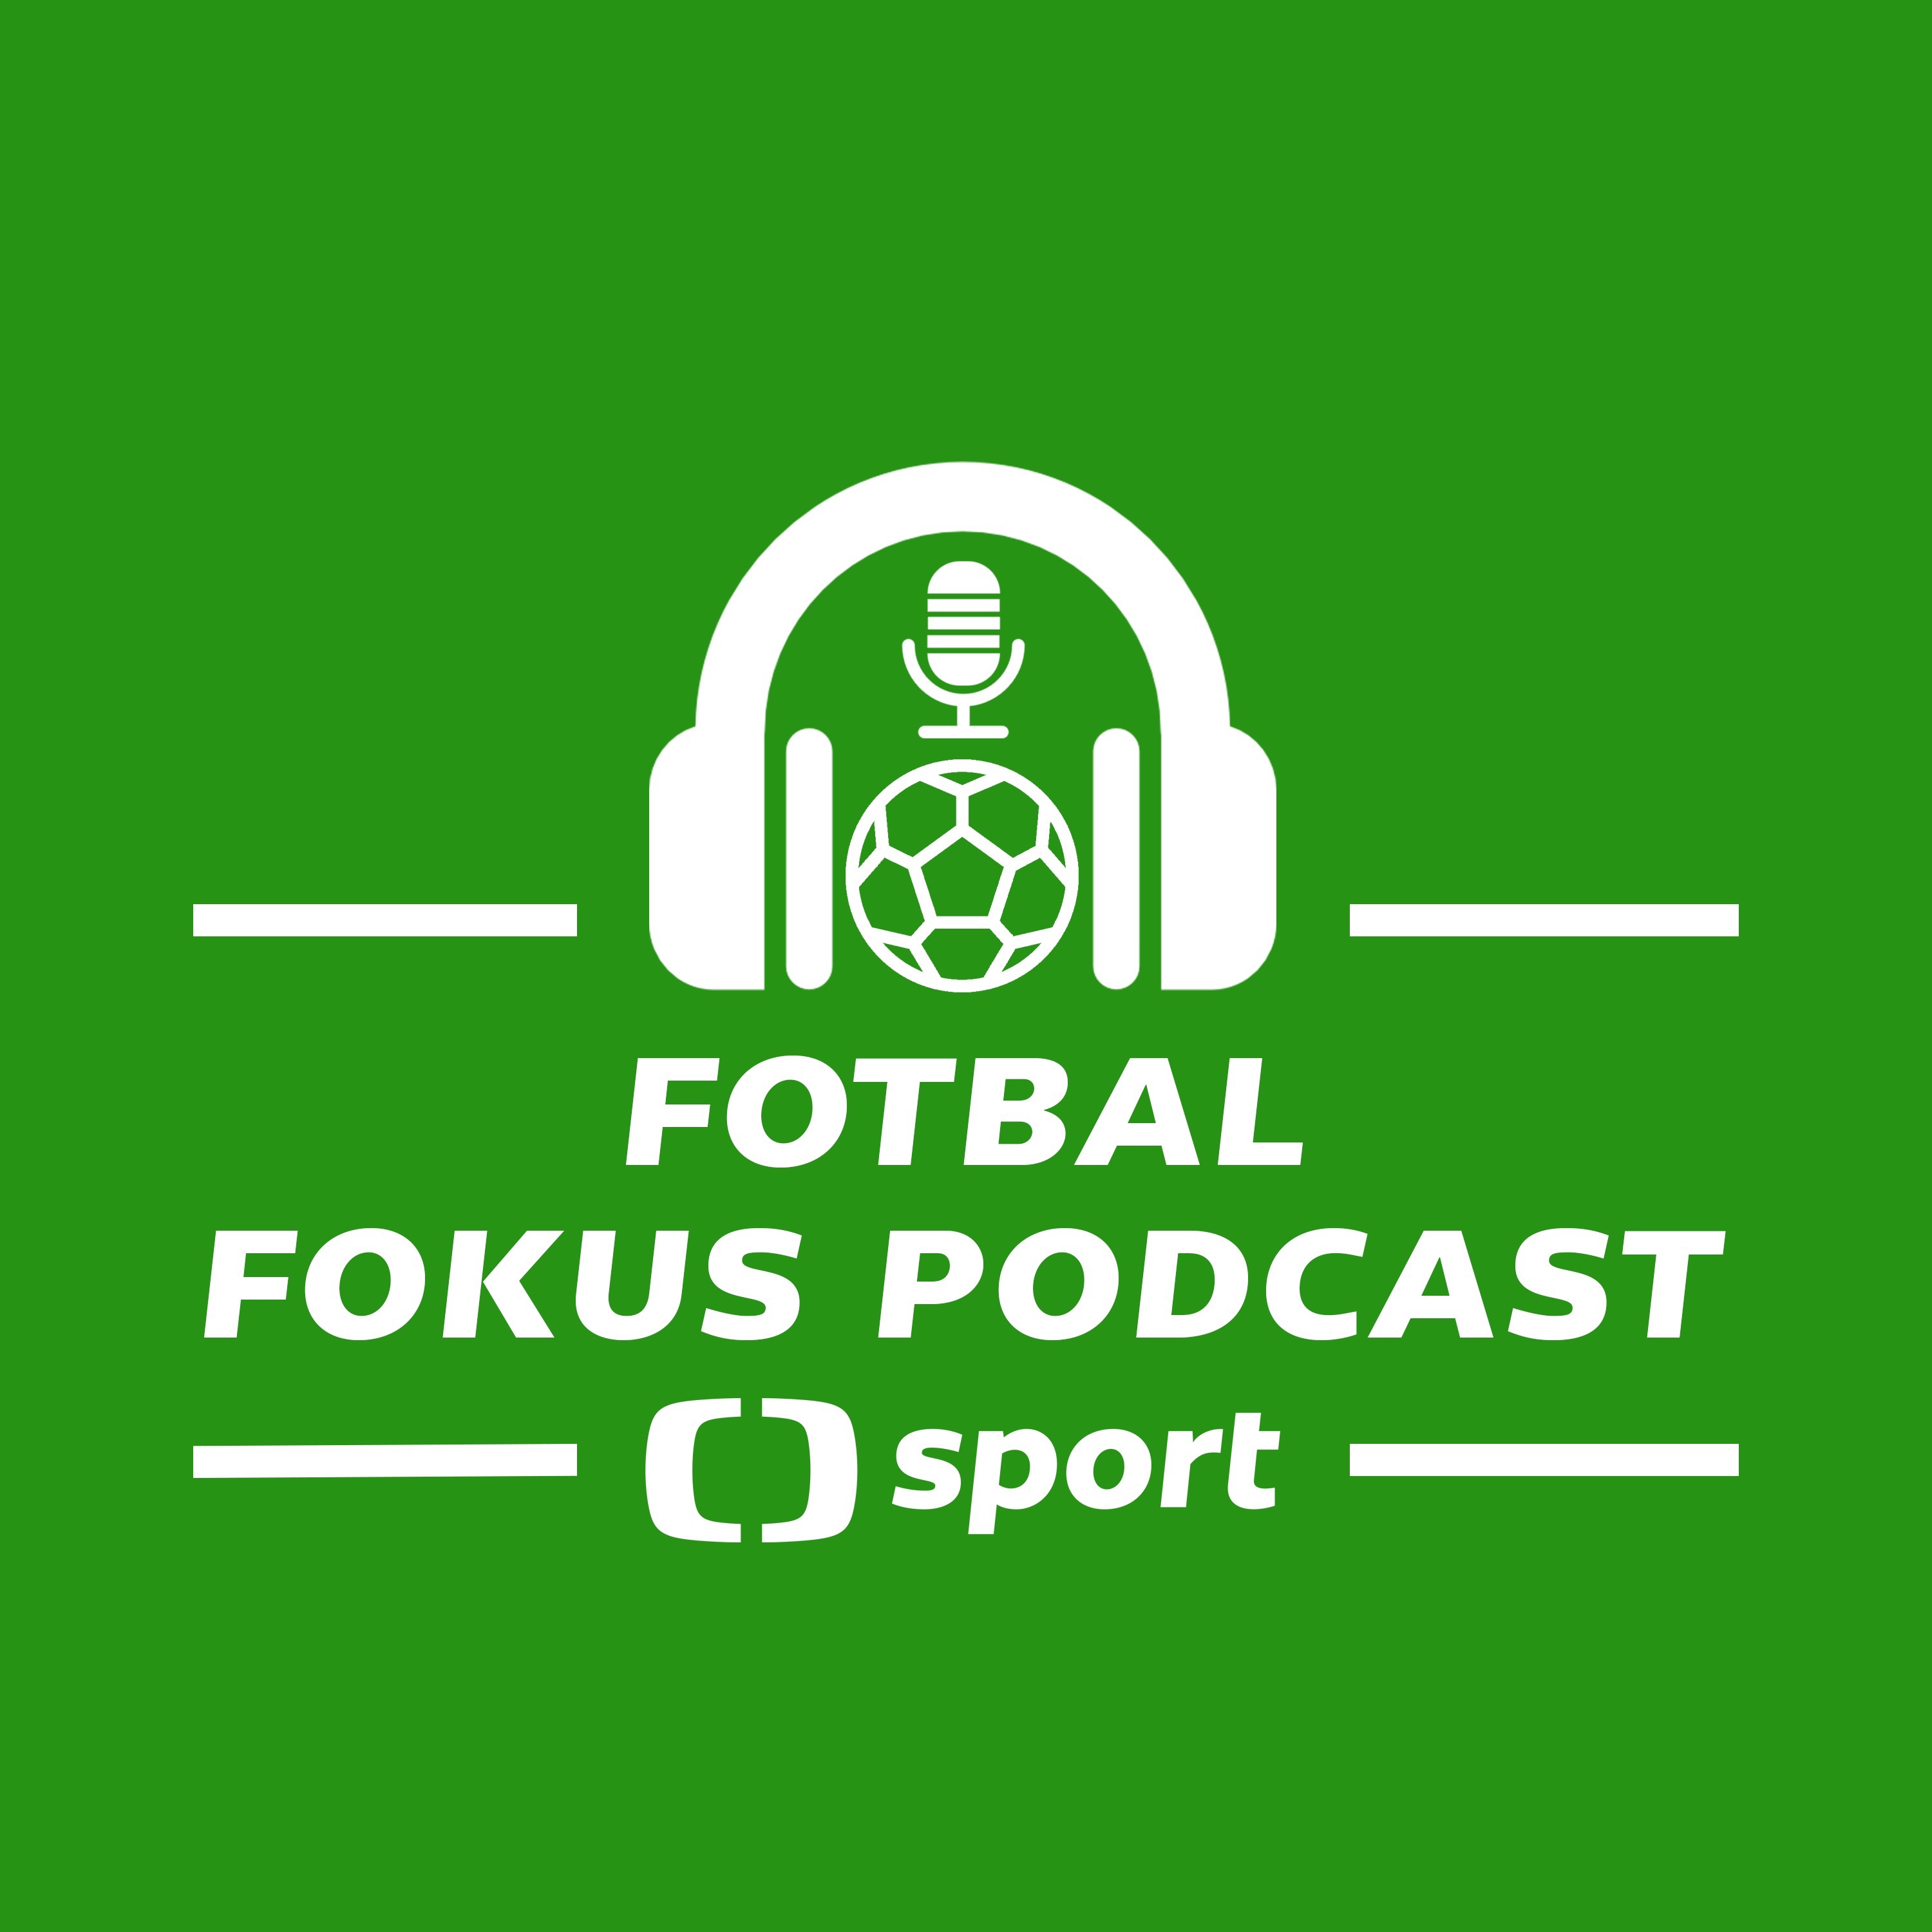 Fotbal fokus podcast: Prosadí se Krmenčík v Bruggách a stane se Plzeň českým Liverpoolem?